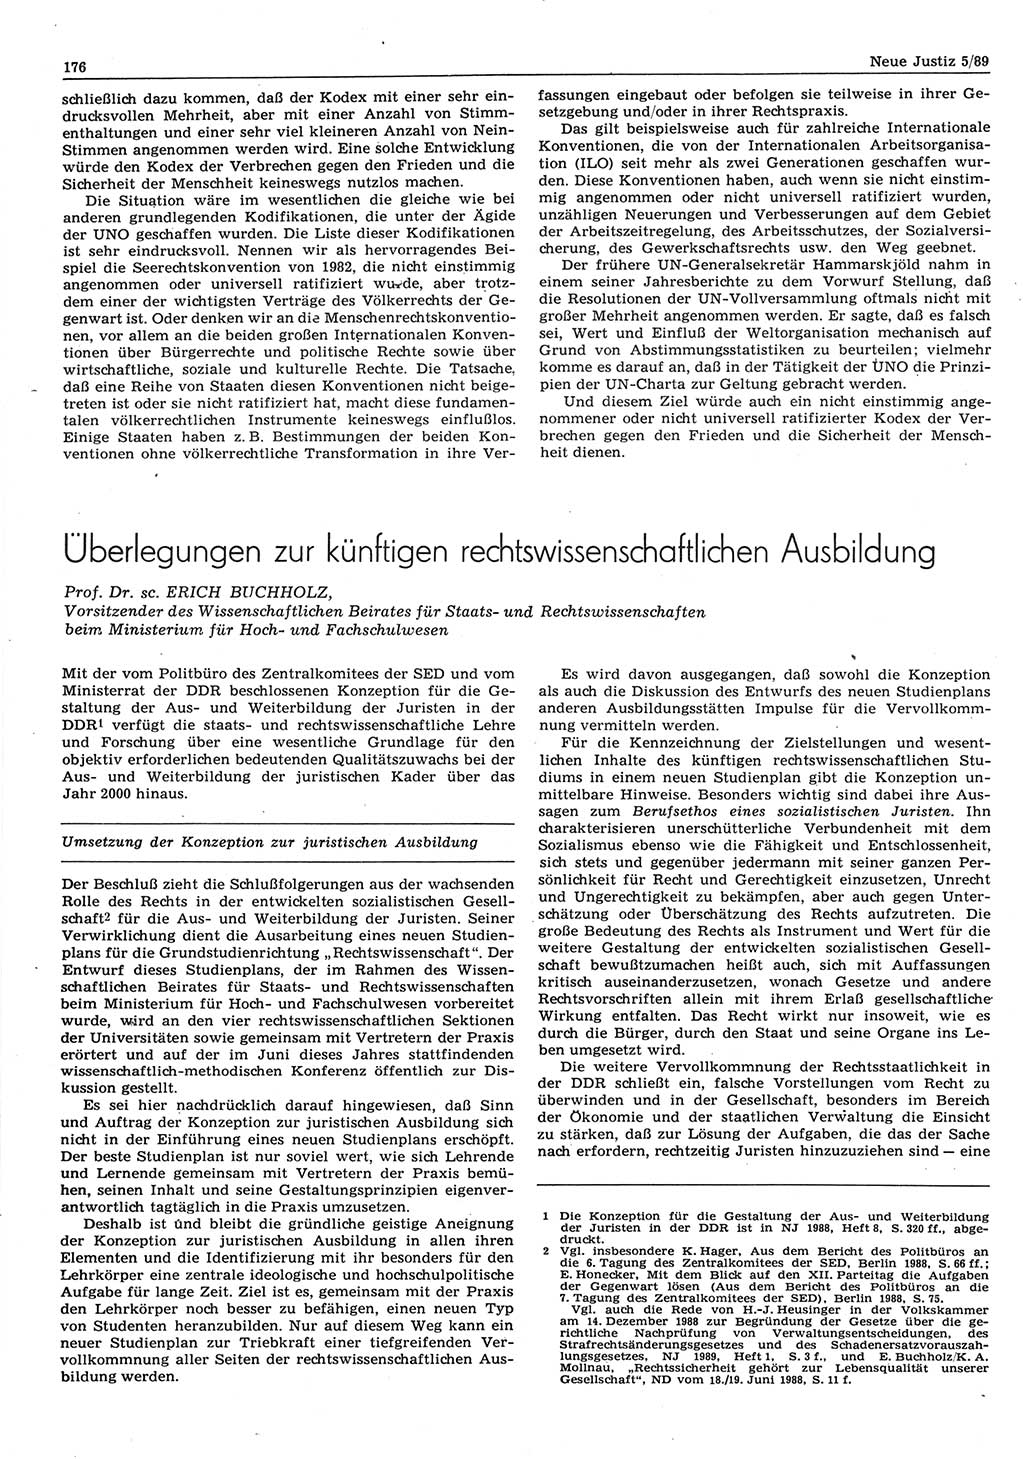 Neue Justiz (NJ), Zeitschrift für sozialistisches Recht und Gesetzlichkeit [Deutsche Demokratische Republik (DDR)], 43. Jahrgang 1989, Seite 176 (NJ DDR 1989, S. 176)